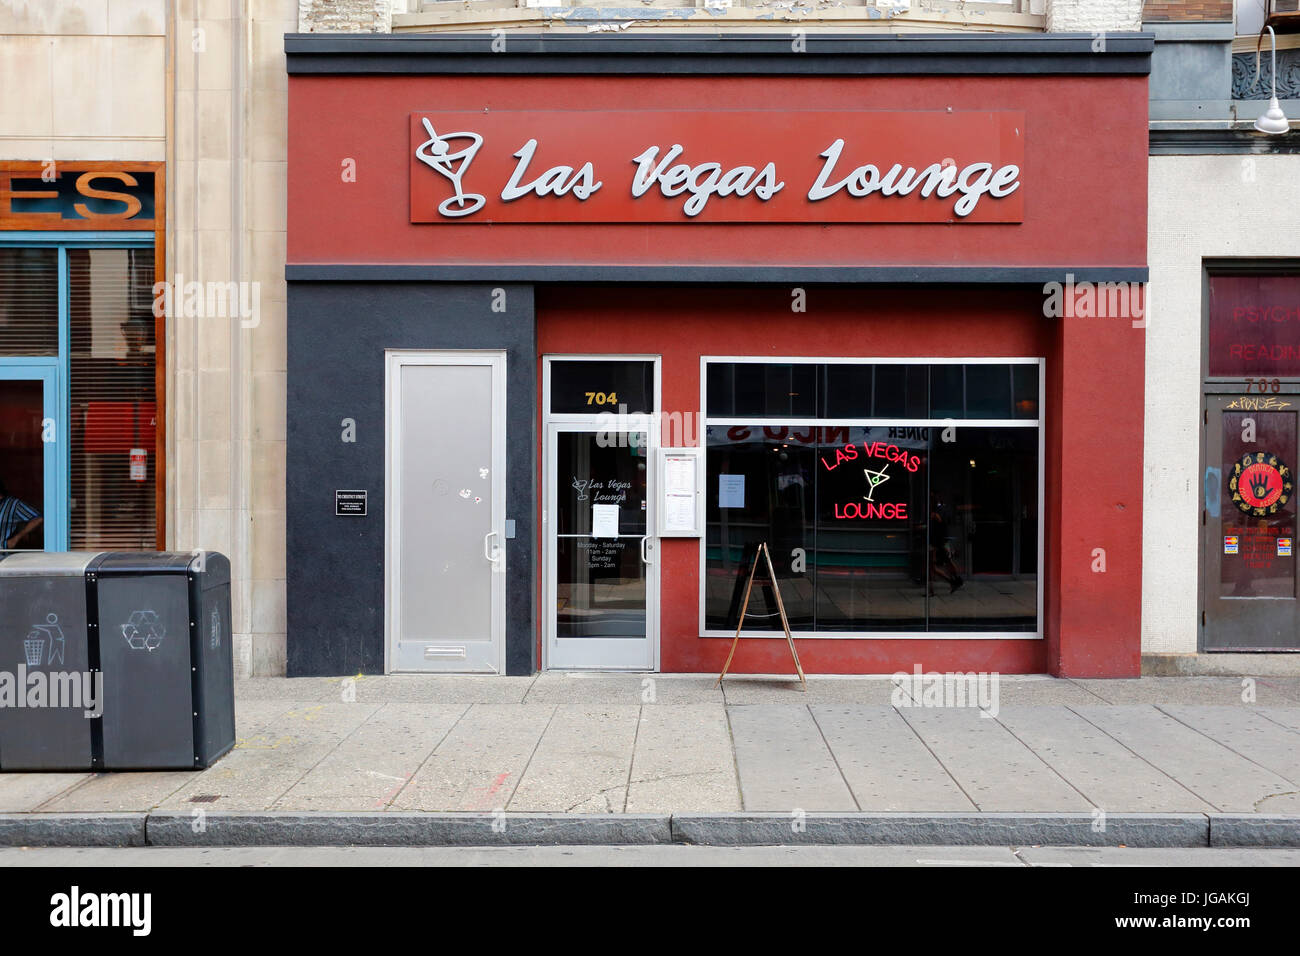 Las Vegas Lounge, 704 Chestnut St, Philadelphia, PA. Escaparate exterior de un bar en el centro de la ciudad Foto de stock